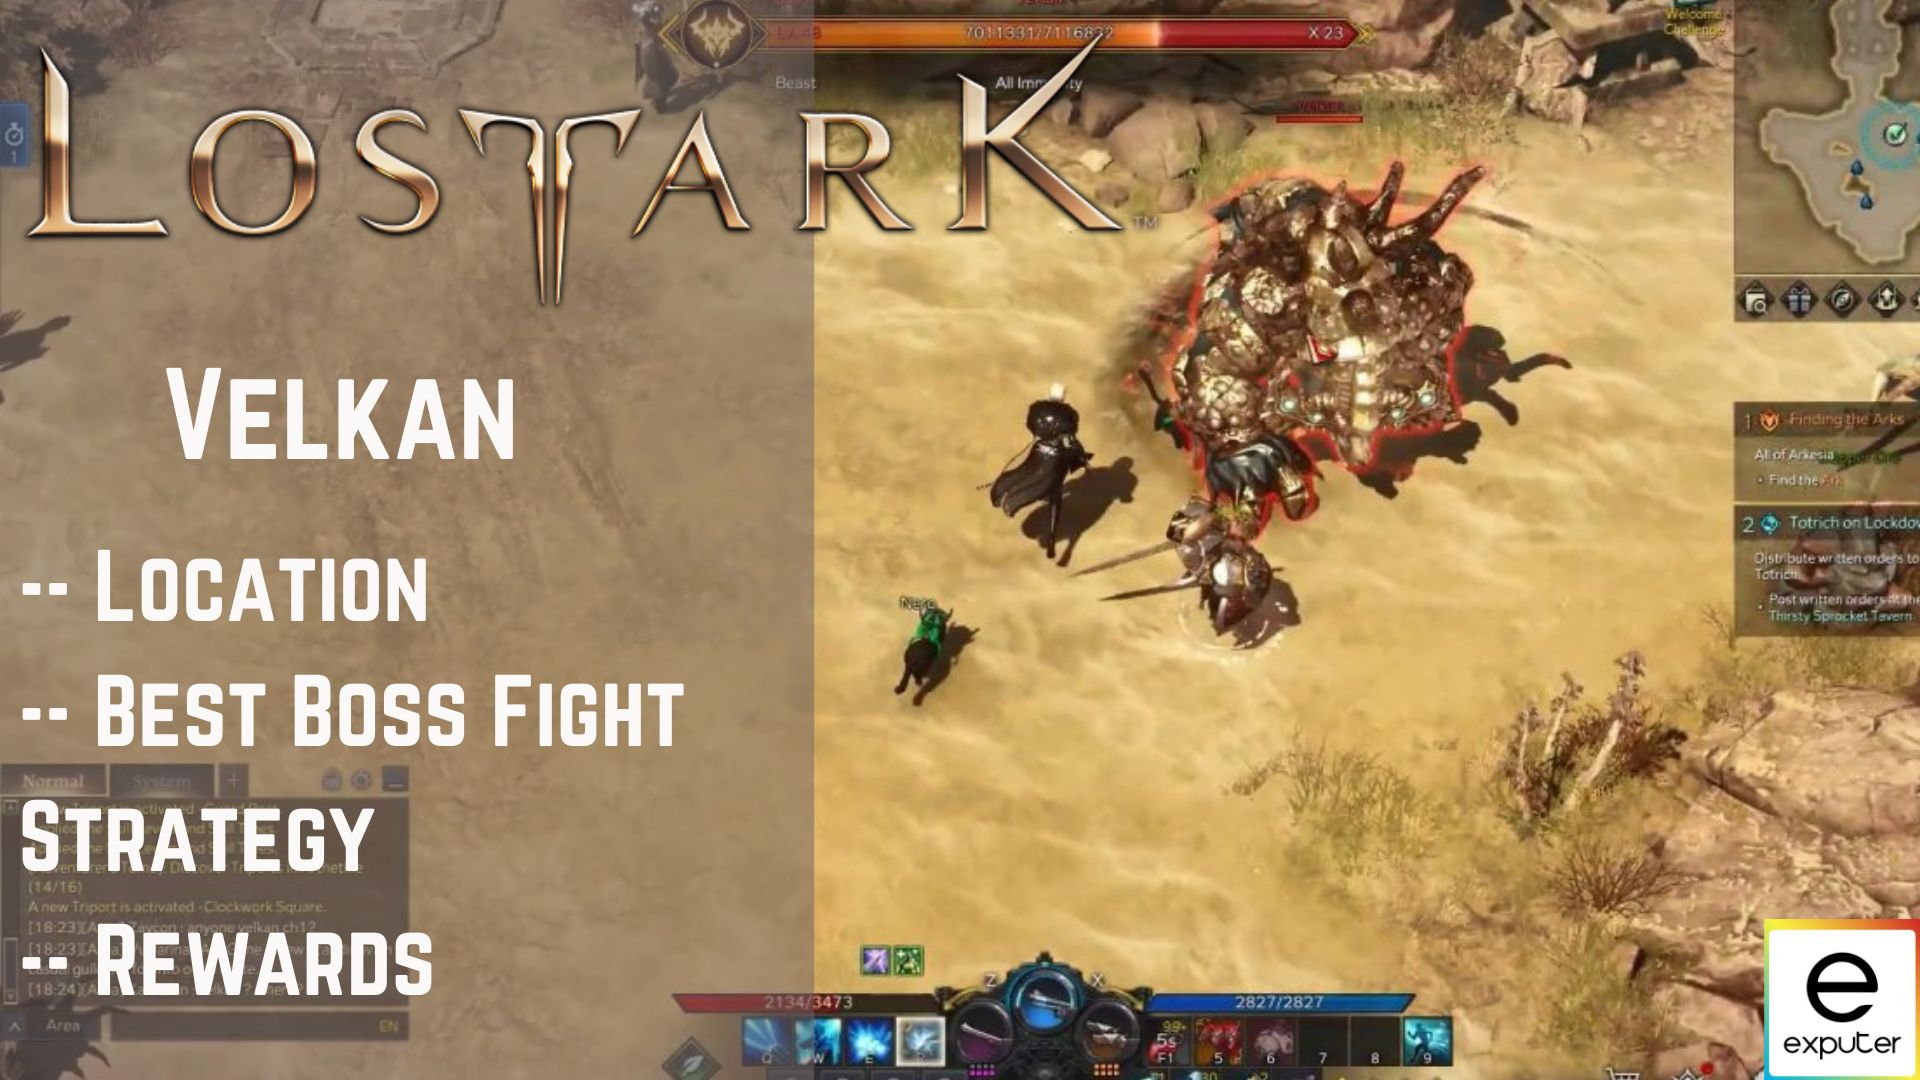 Lost Ark Velkan: Location, Boss Fight & Rewards